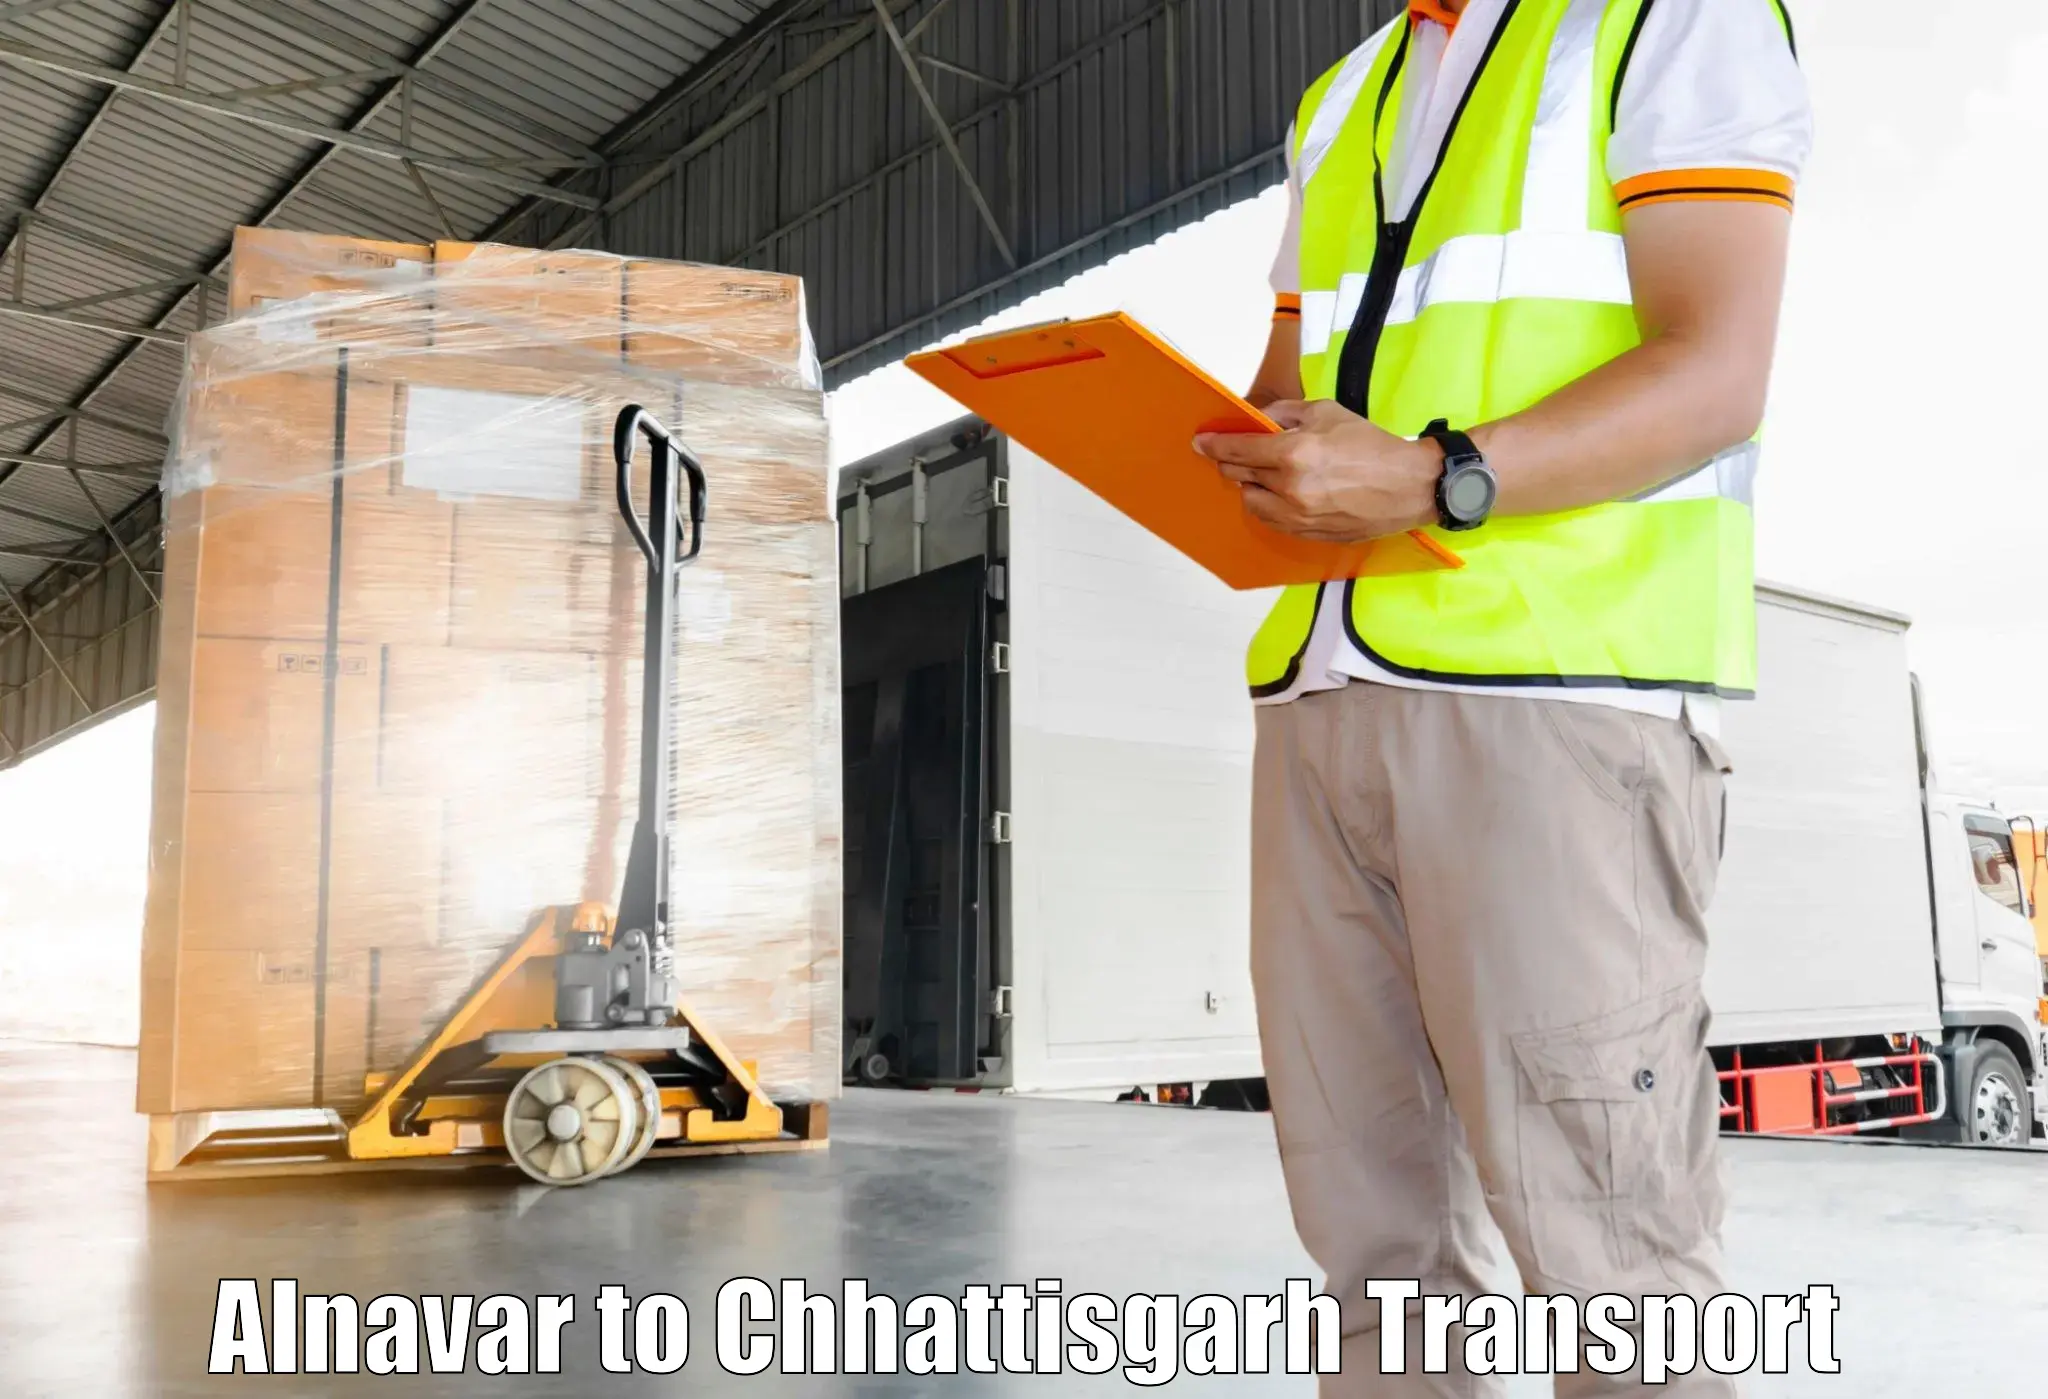 Online transport service Alnavar to Ramanujganj